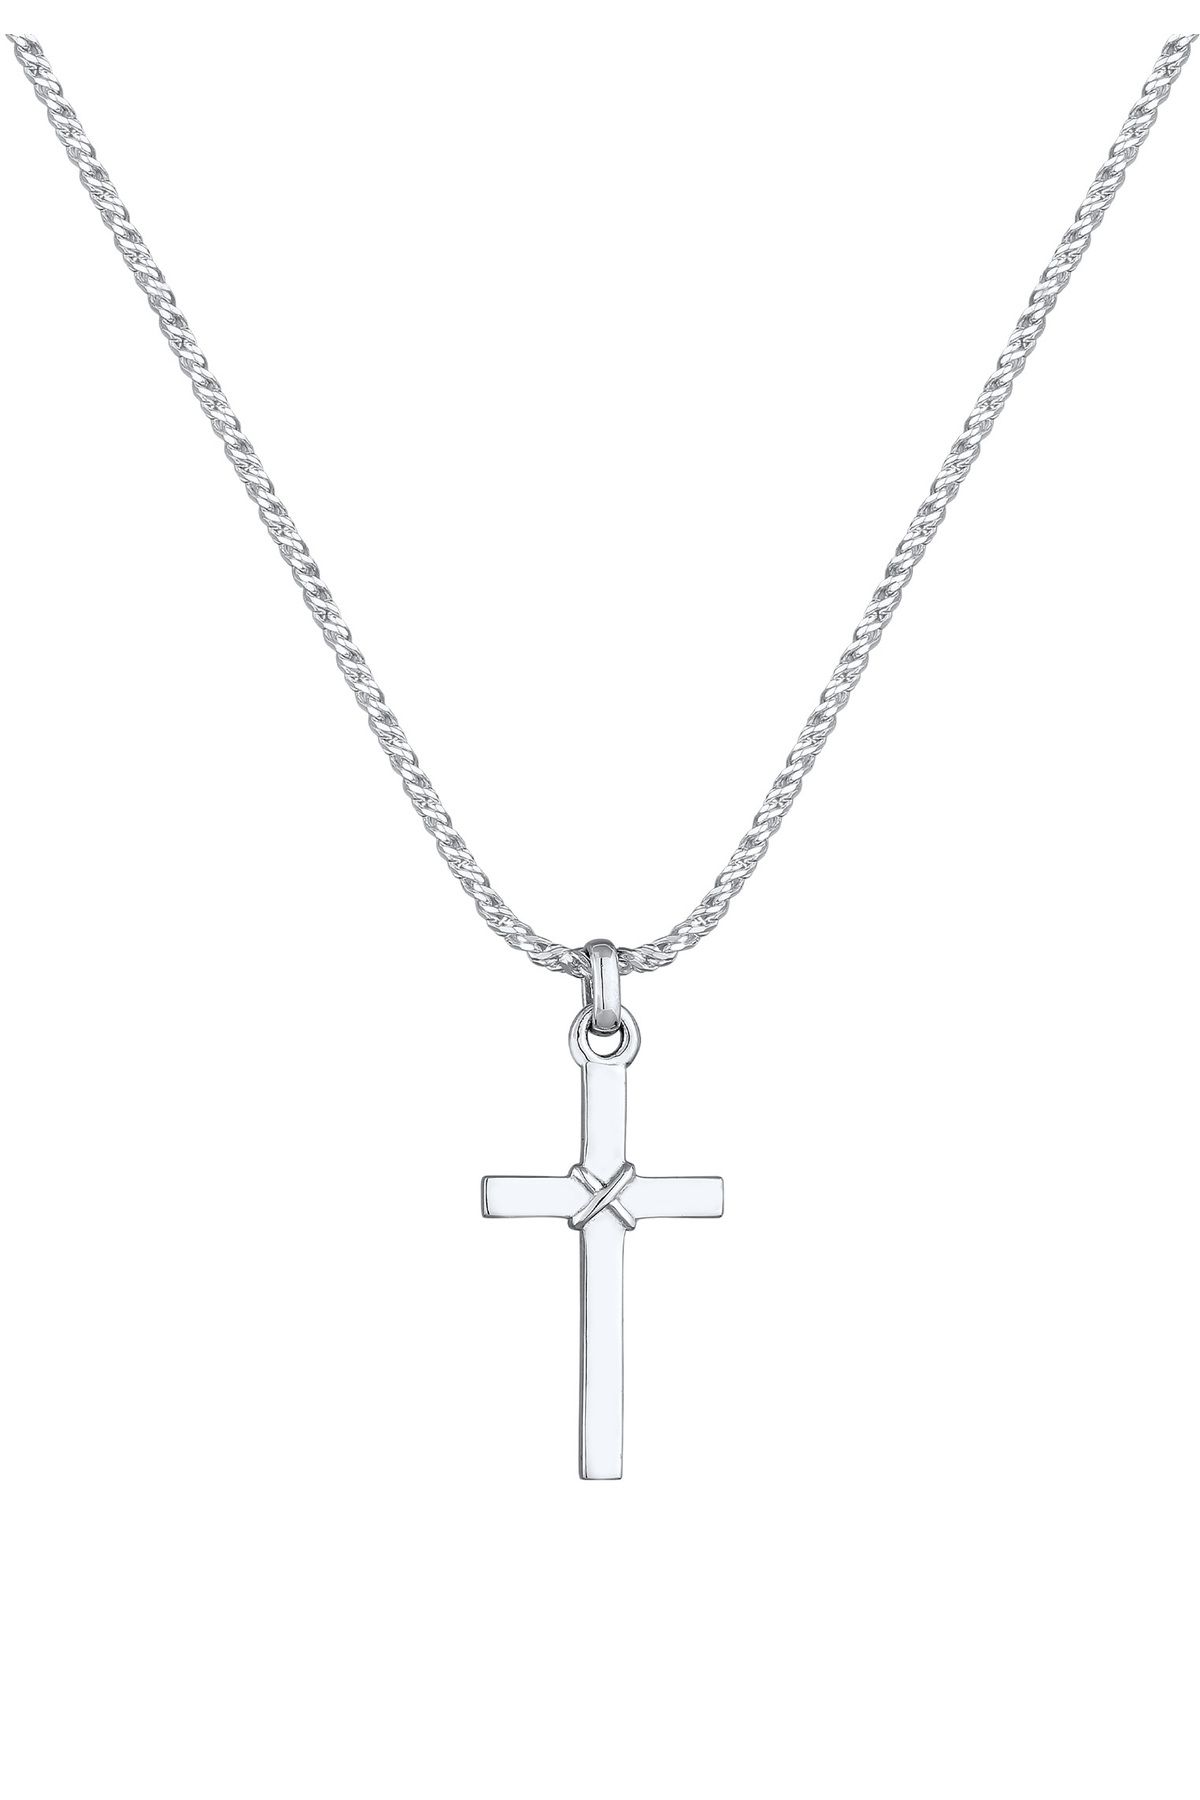 KUZZOI 925 Herren Trendyol Kordelkette Flach Halskette - Kreuz Silber